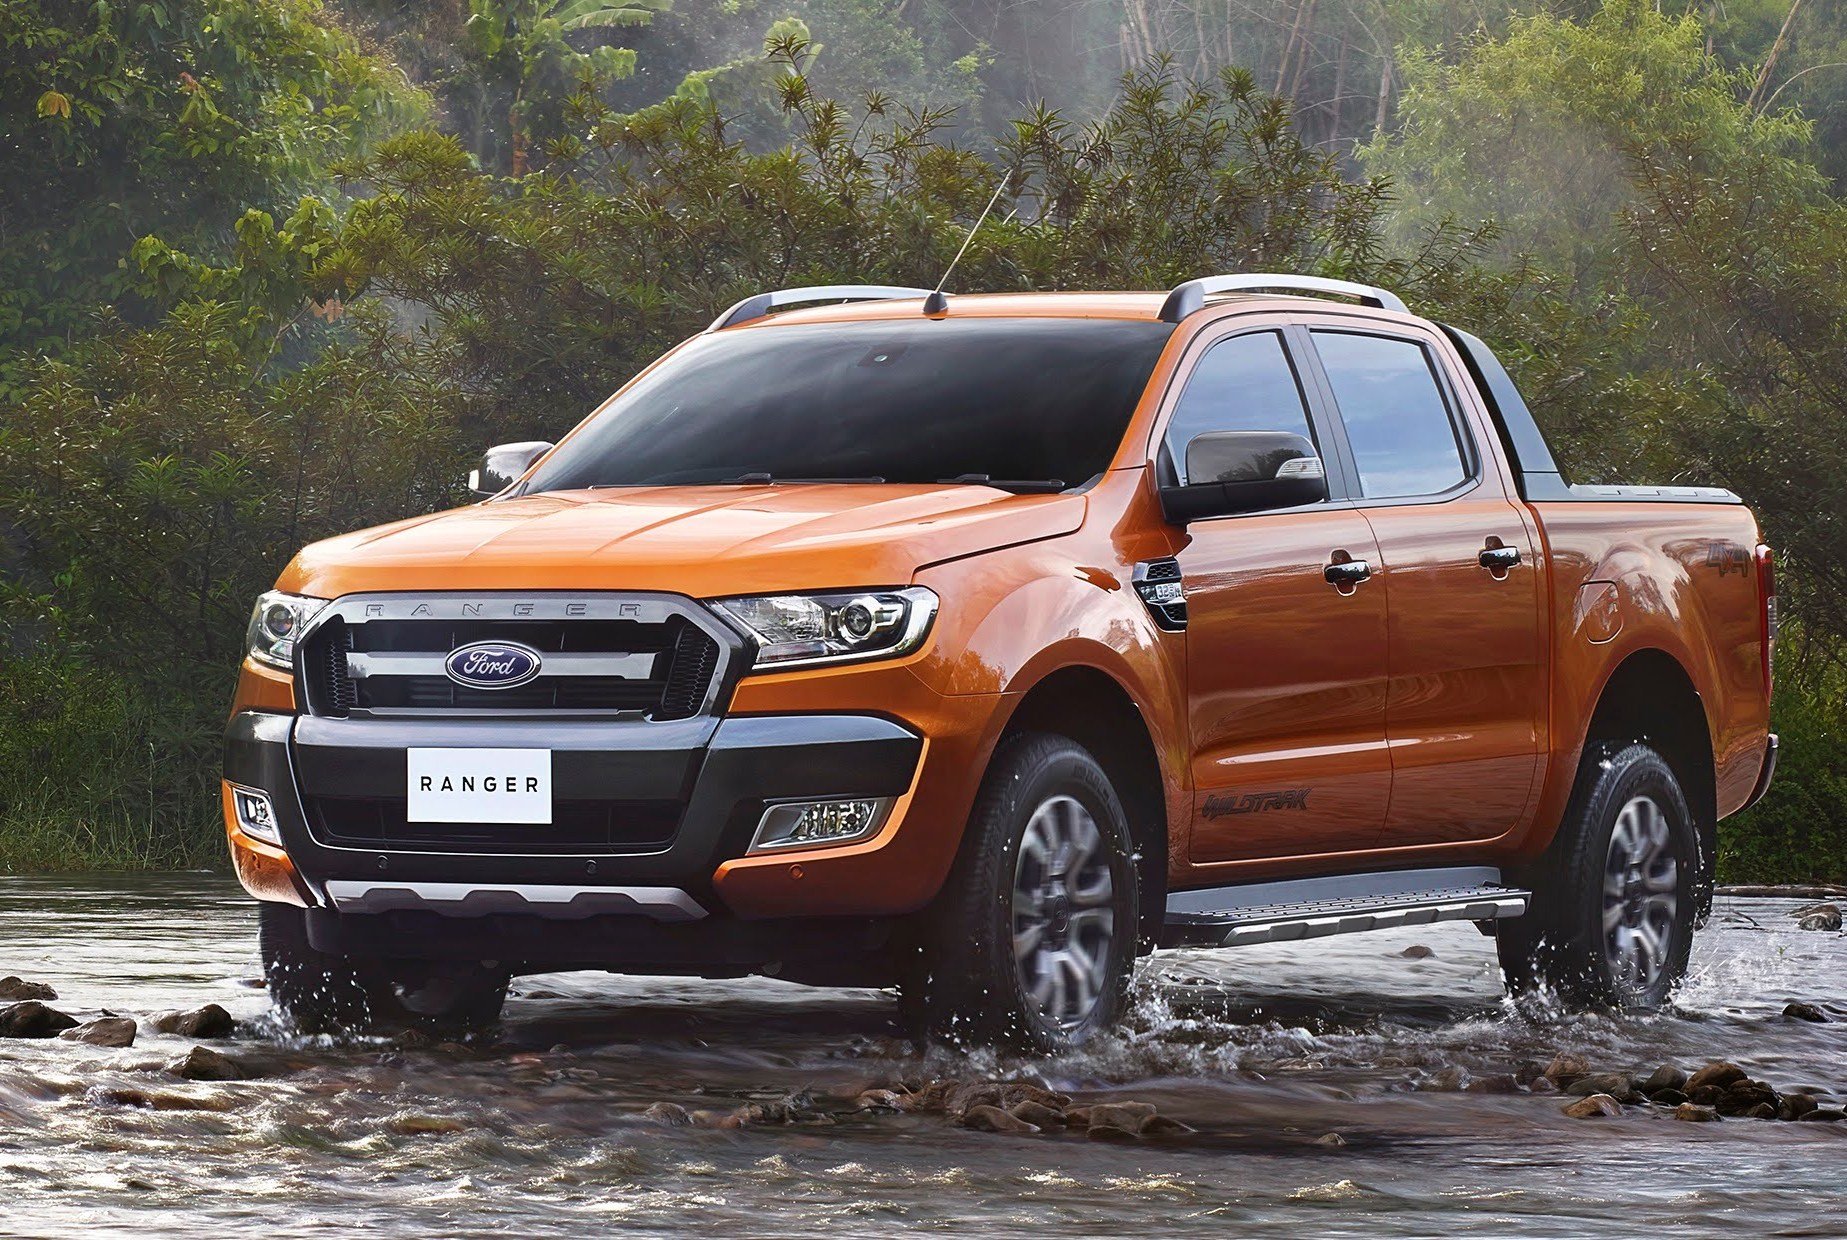 Đánh giá xe Ford Ranger  nâng tầm bản lĩnh  thách thức mọi giới hạn   Hiền Trương Auto  Độ xe bán tải chuyên nghiệp